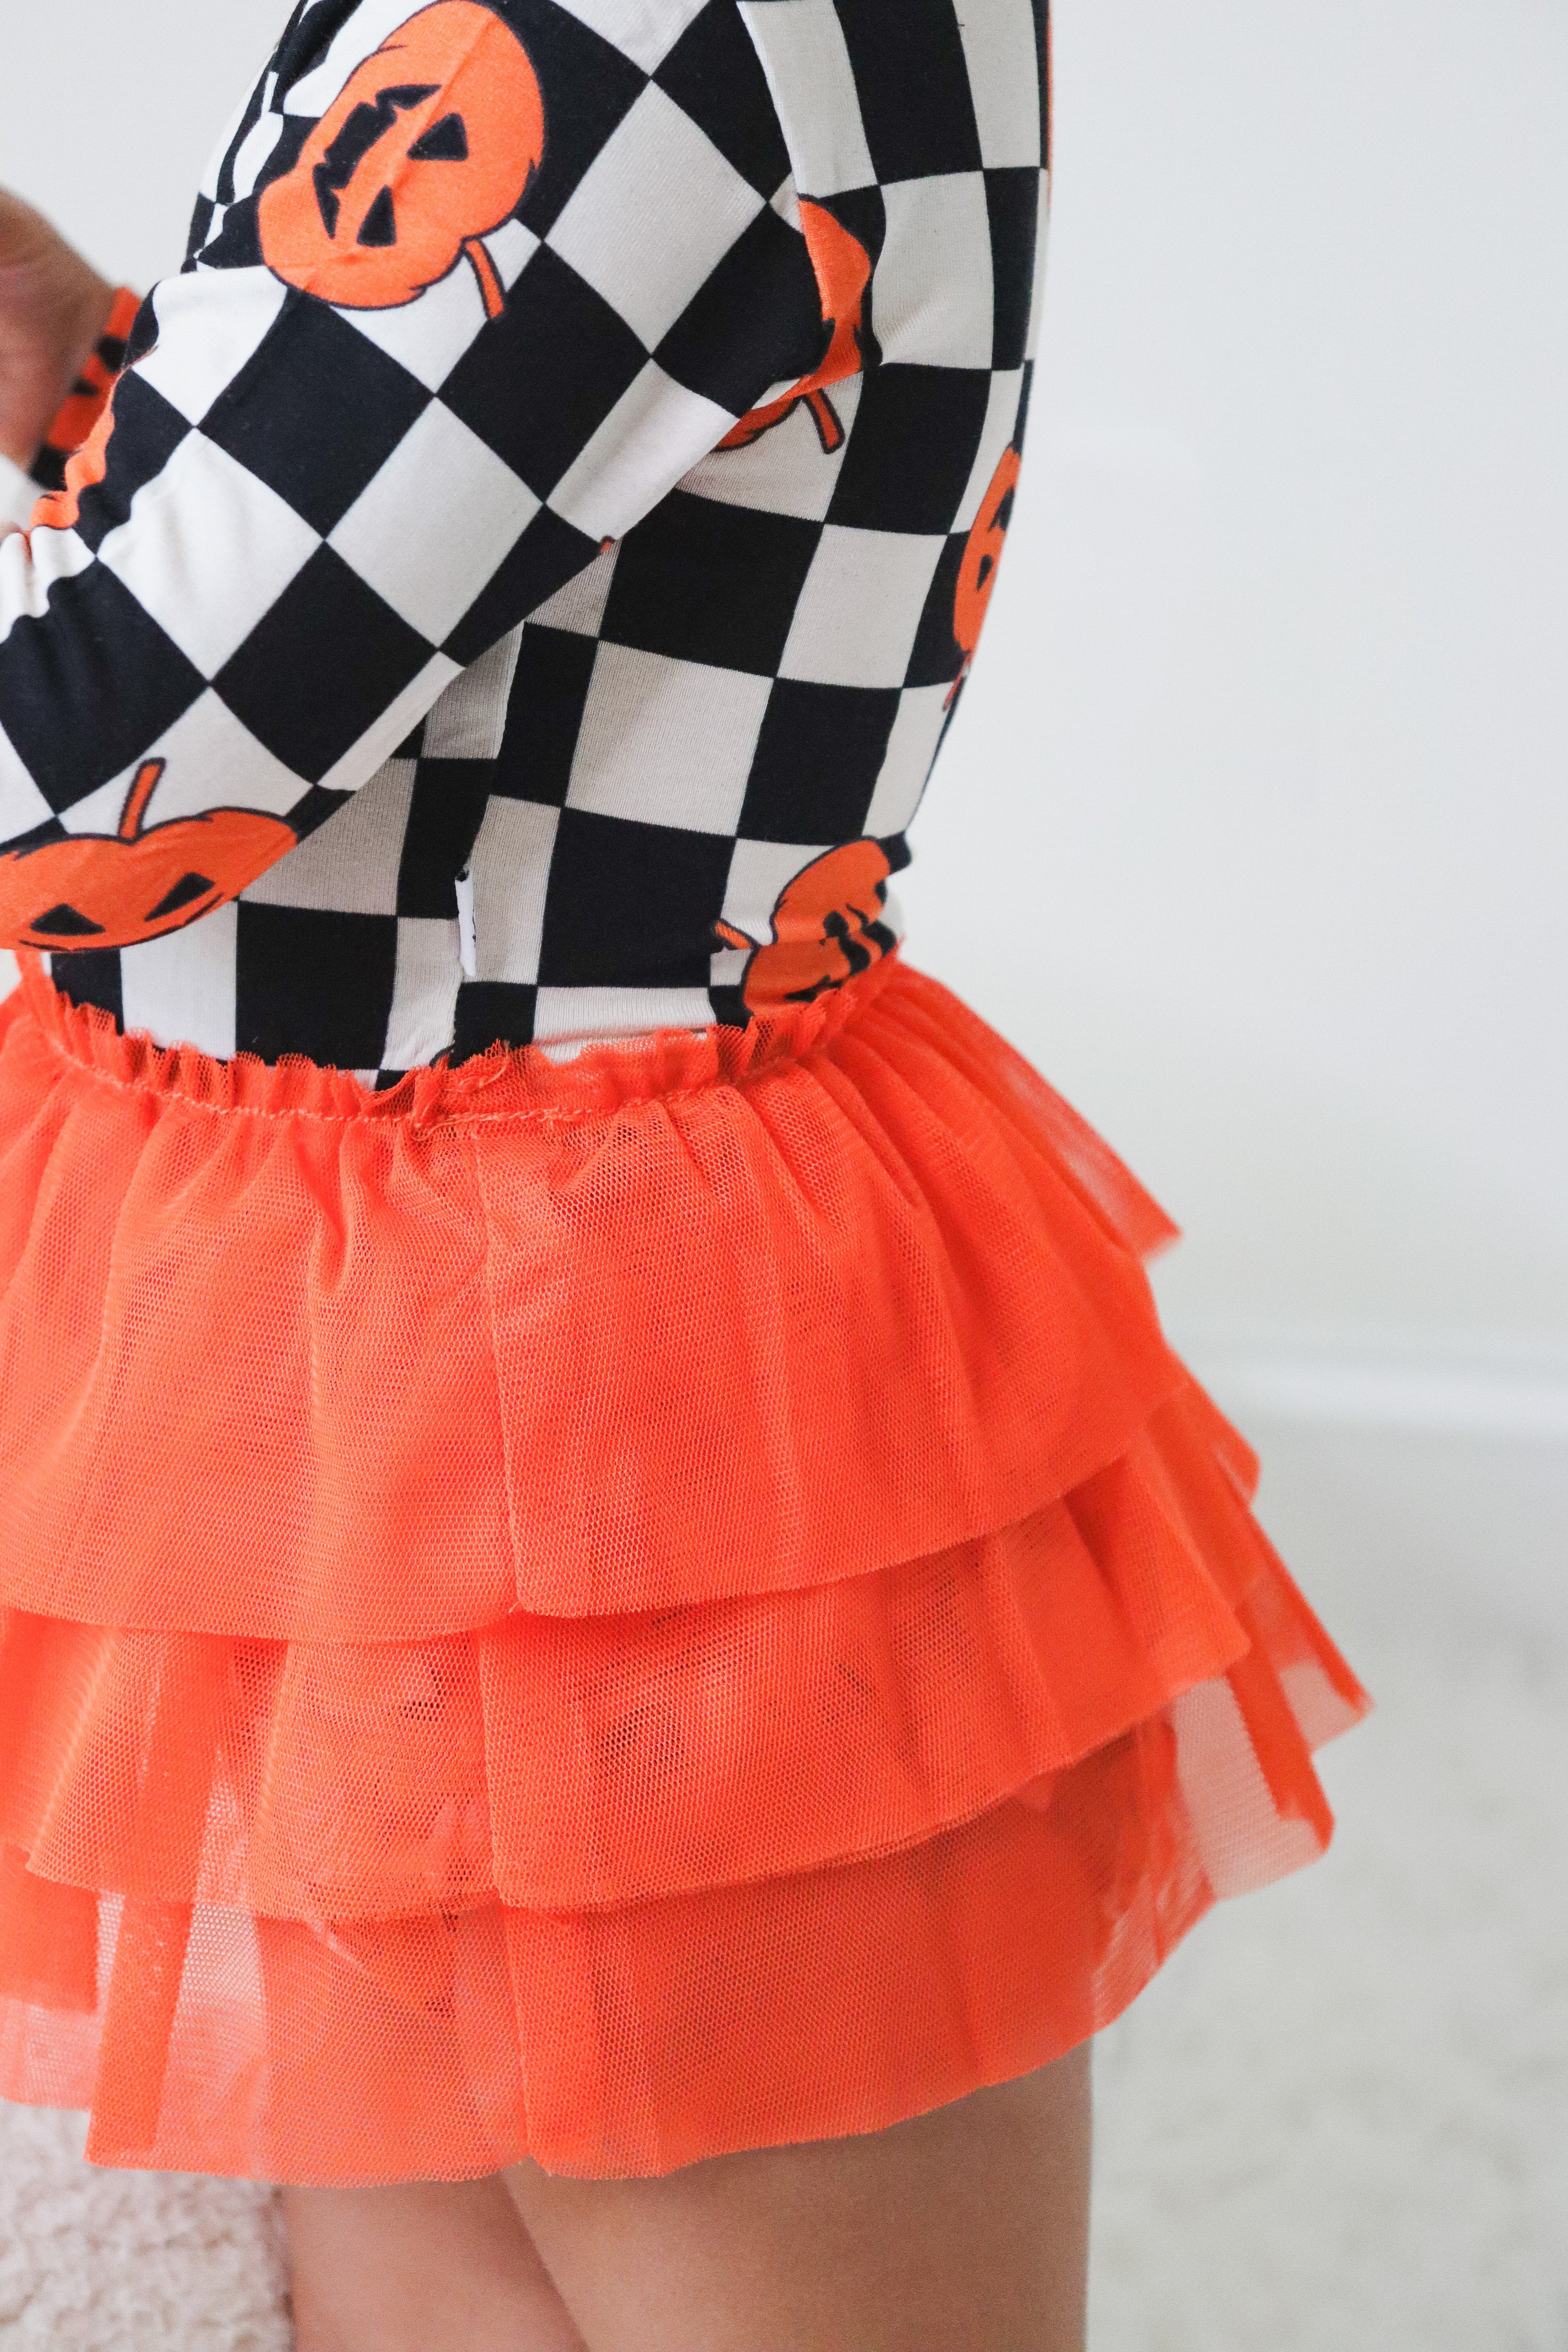 Pumpkin Checkmate Dream Tutu Bodysuit Dress